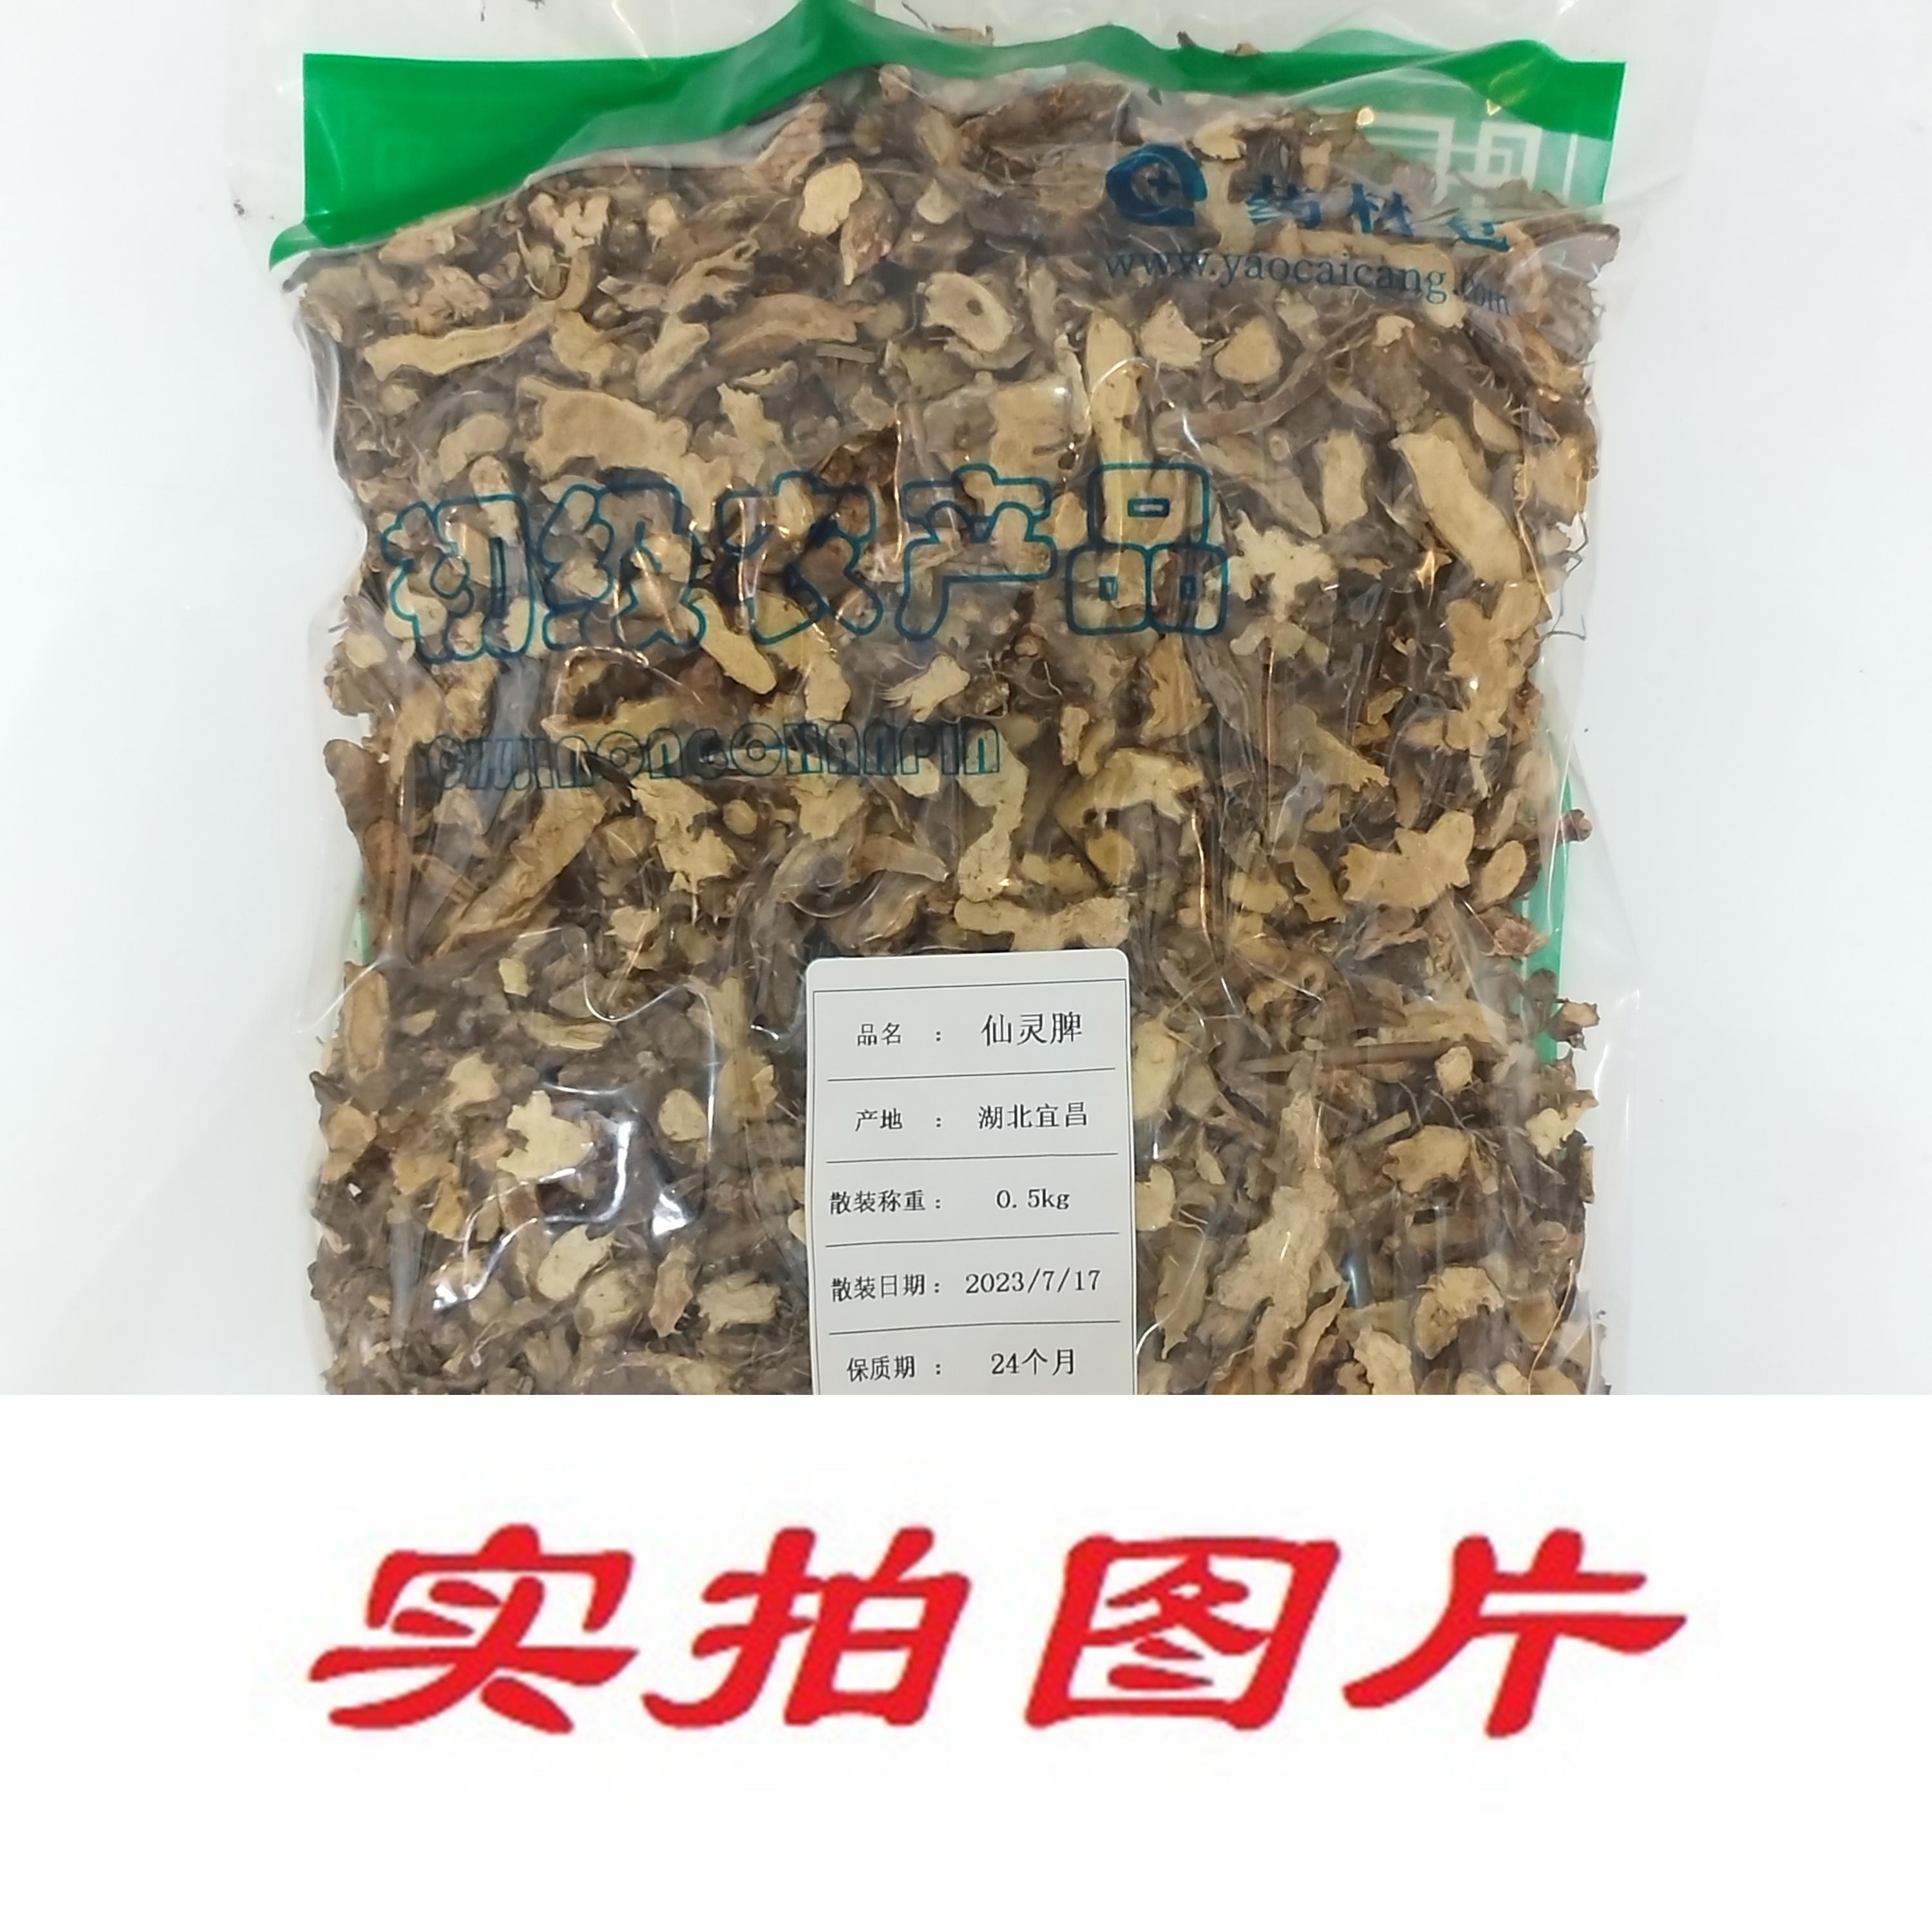 【】仙灵脾0.5kg-农副产品